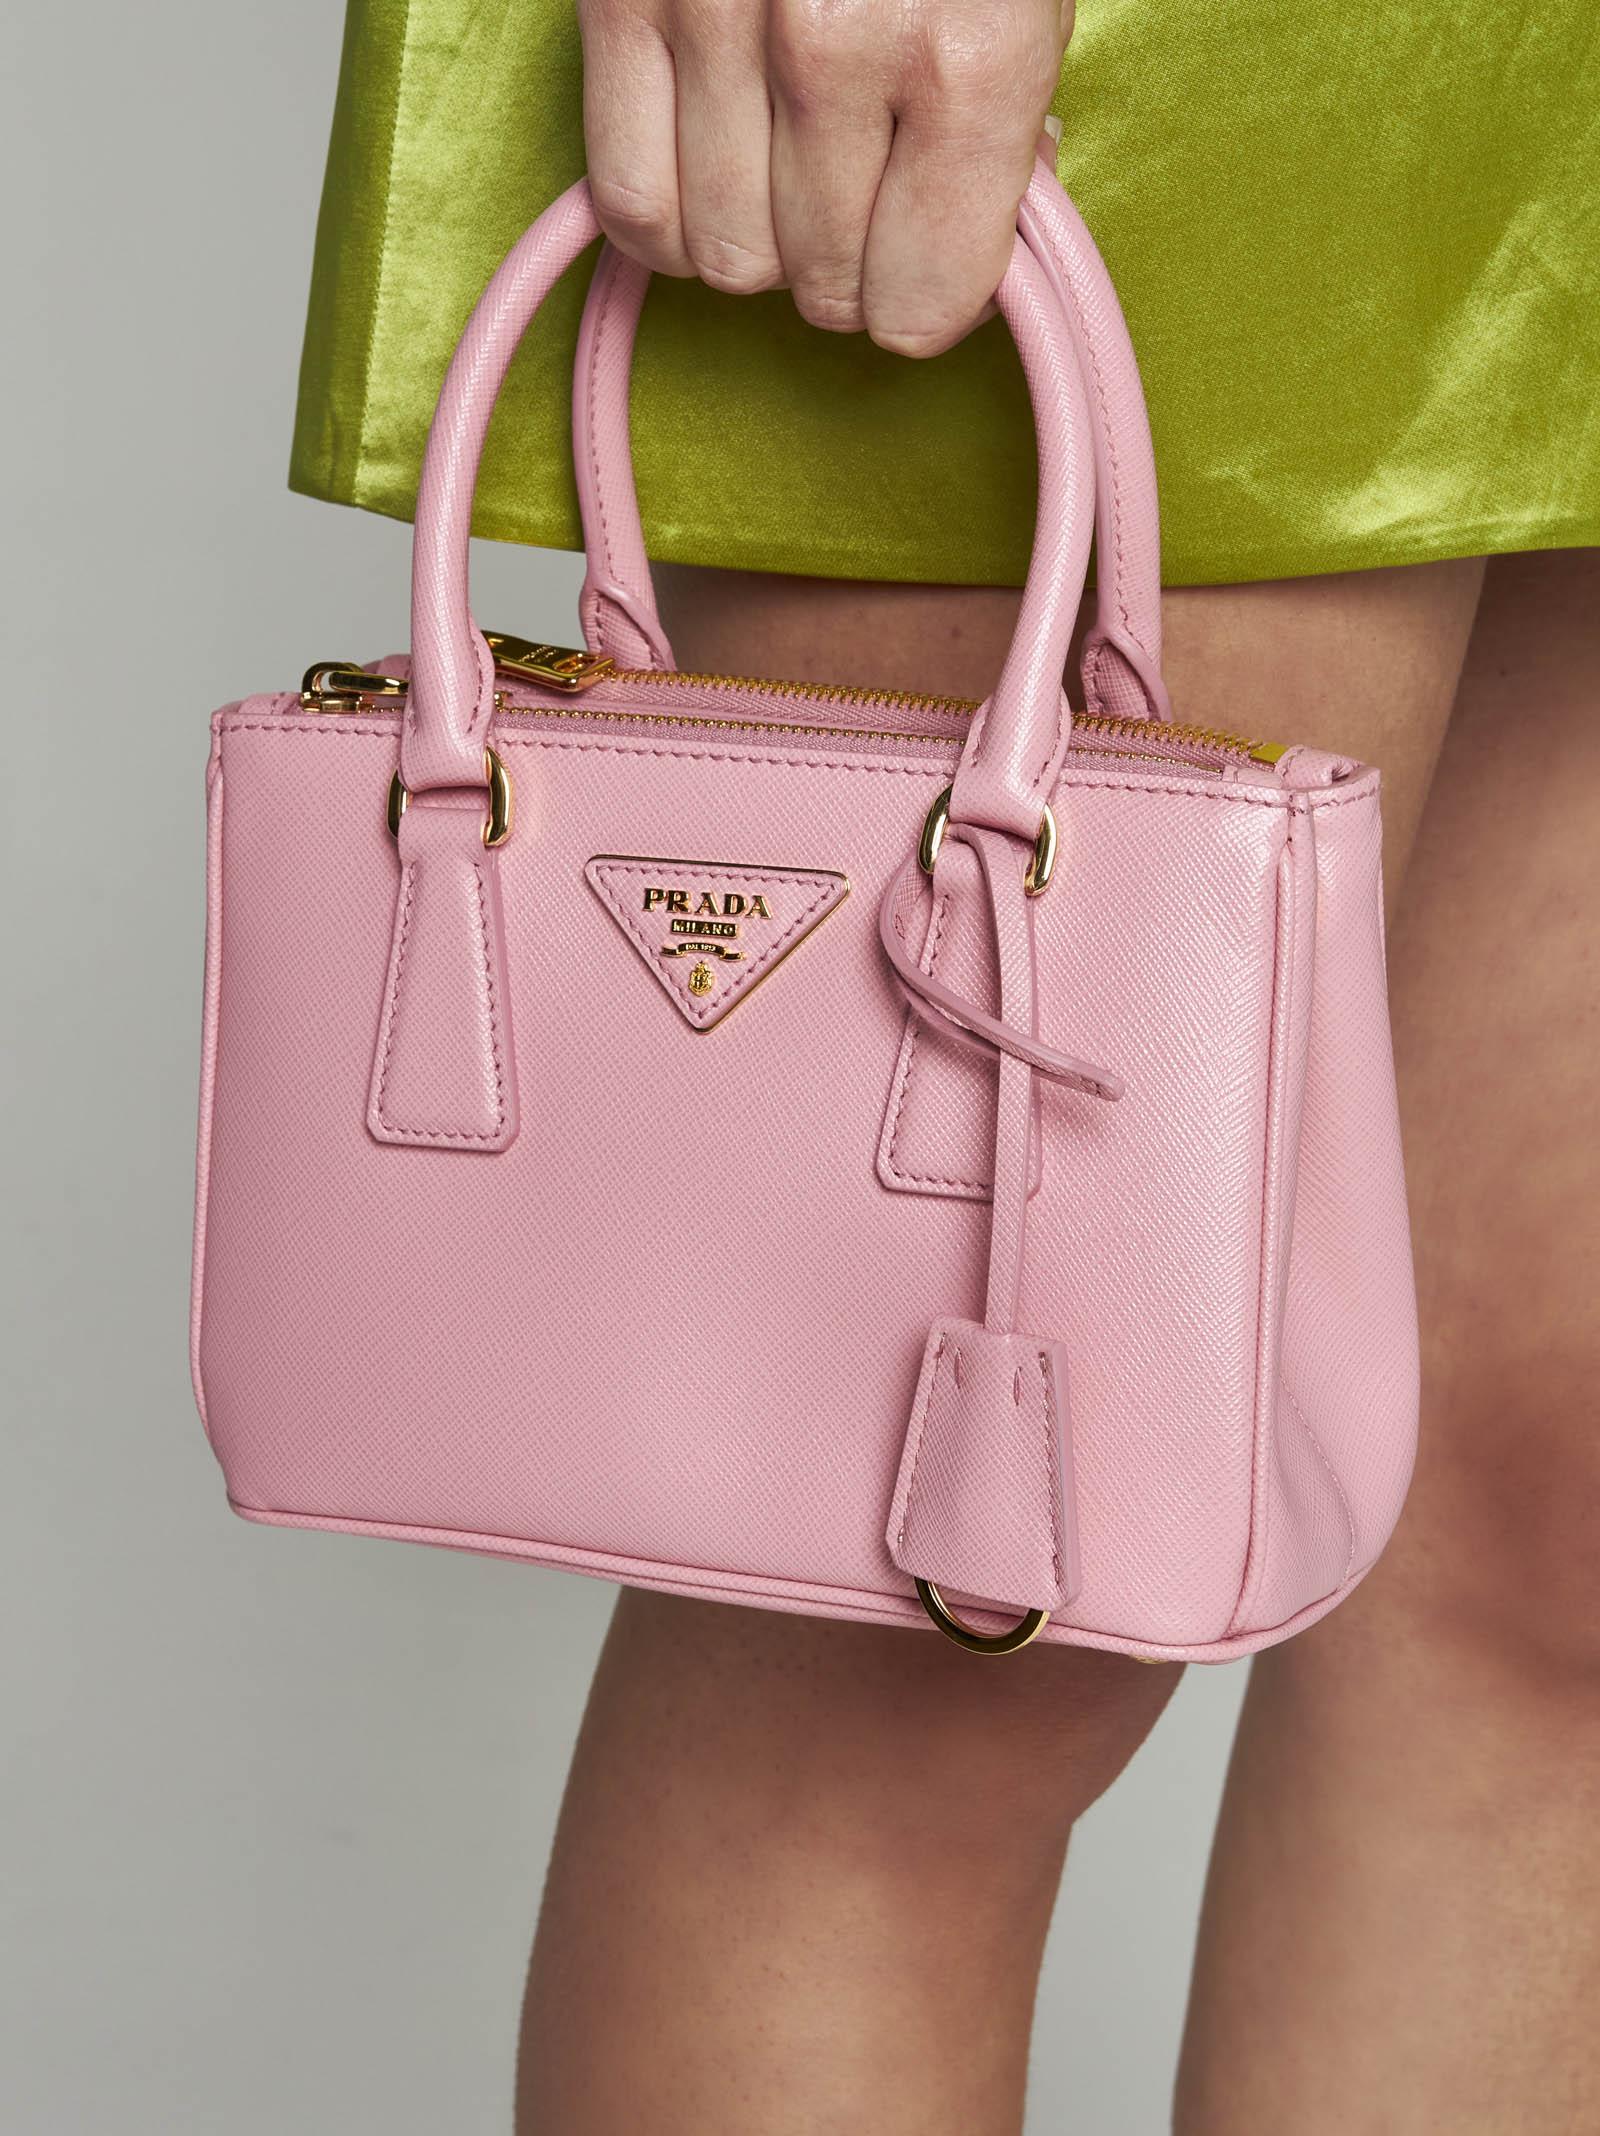 Prada Galleria Small Saffiano Leather Bag in Pink